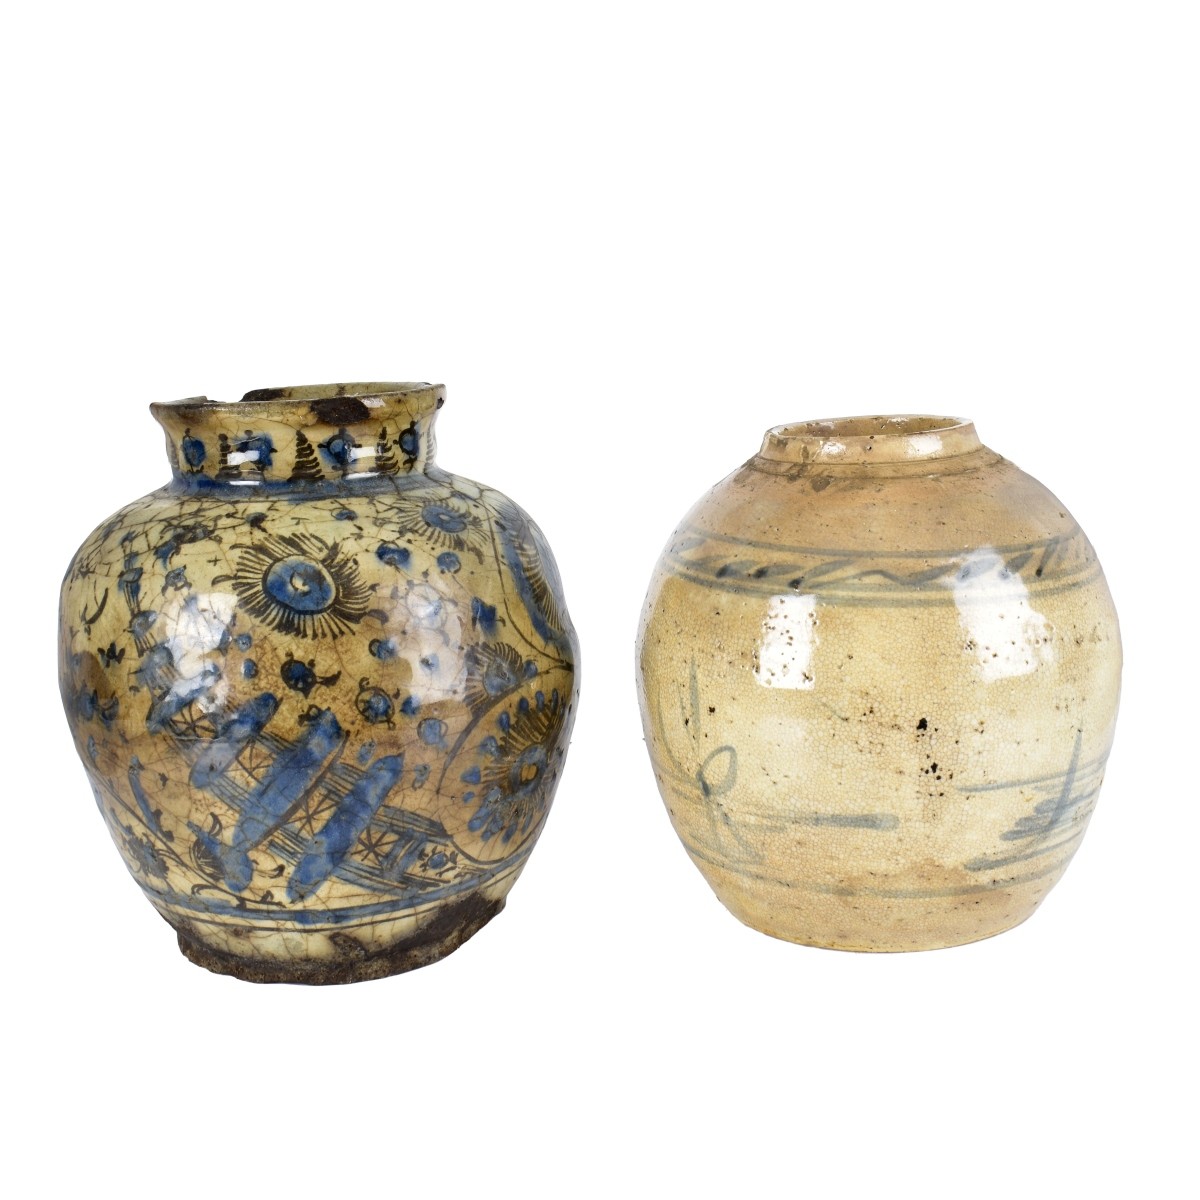 Two Antique Porcelain Jars